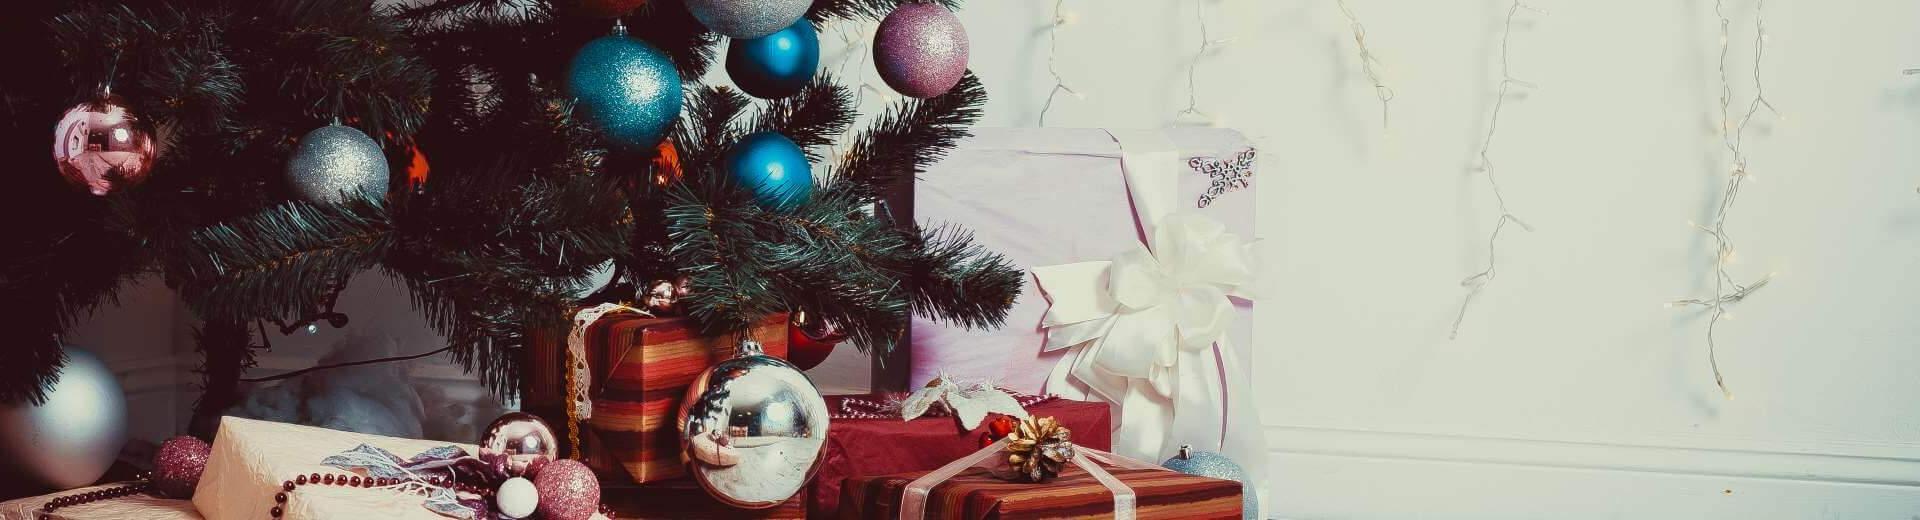 Weihnachten im Ferienhaus in Norwegen | Casamundo - Casamundo